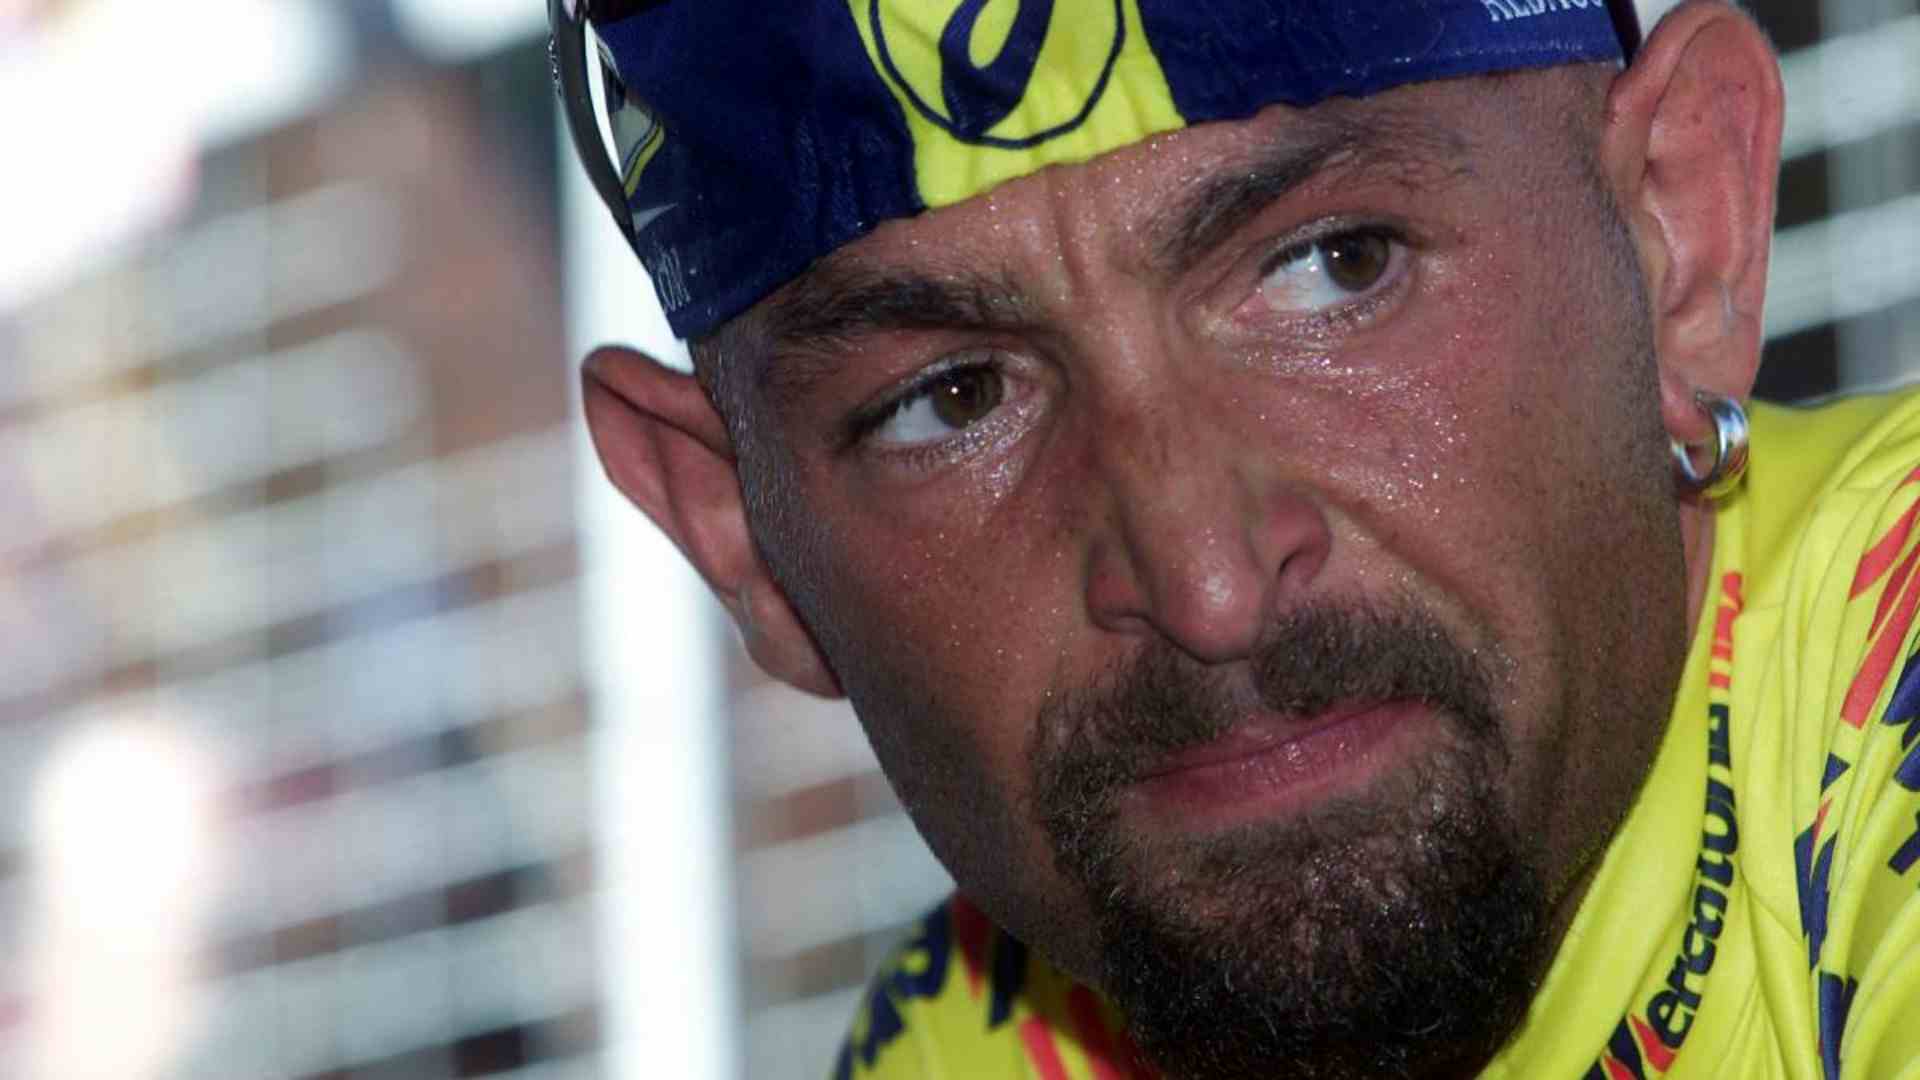 "Se vinceva Pantani, la Camorra falliva": le parole del pentito sul Giro 1999